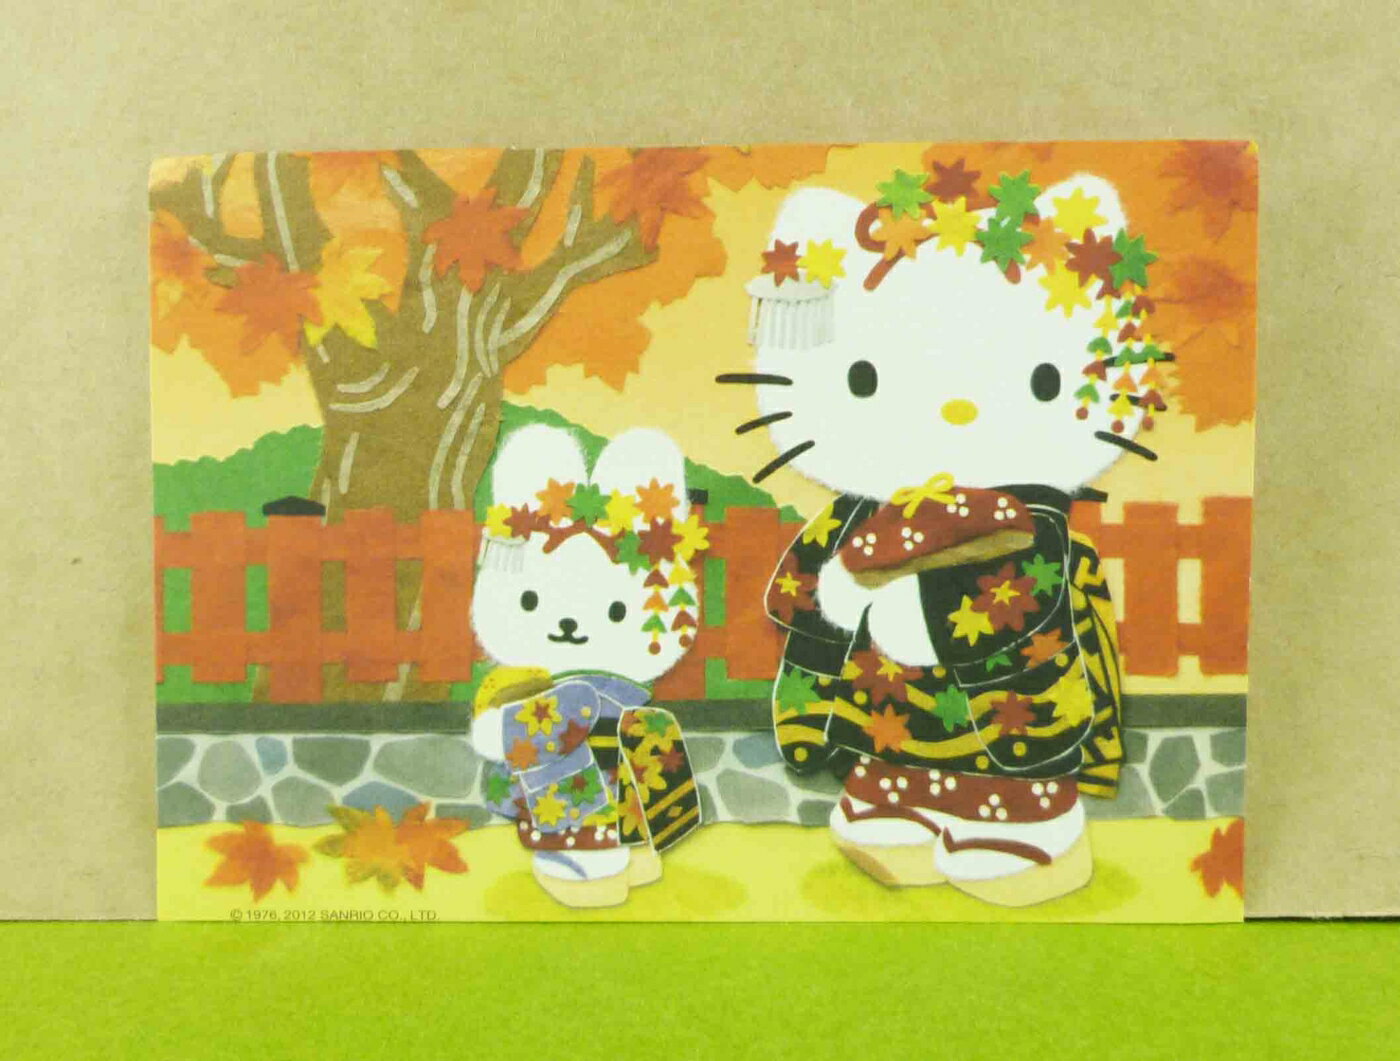 【震撼精品百貨】Hello Kitty 凱蒂貓 造型卡片-楓葉 震撼日式精品百貨